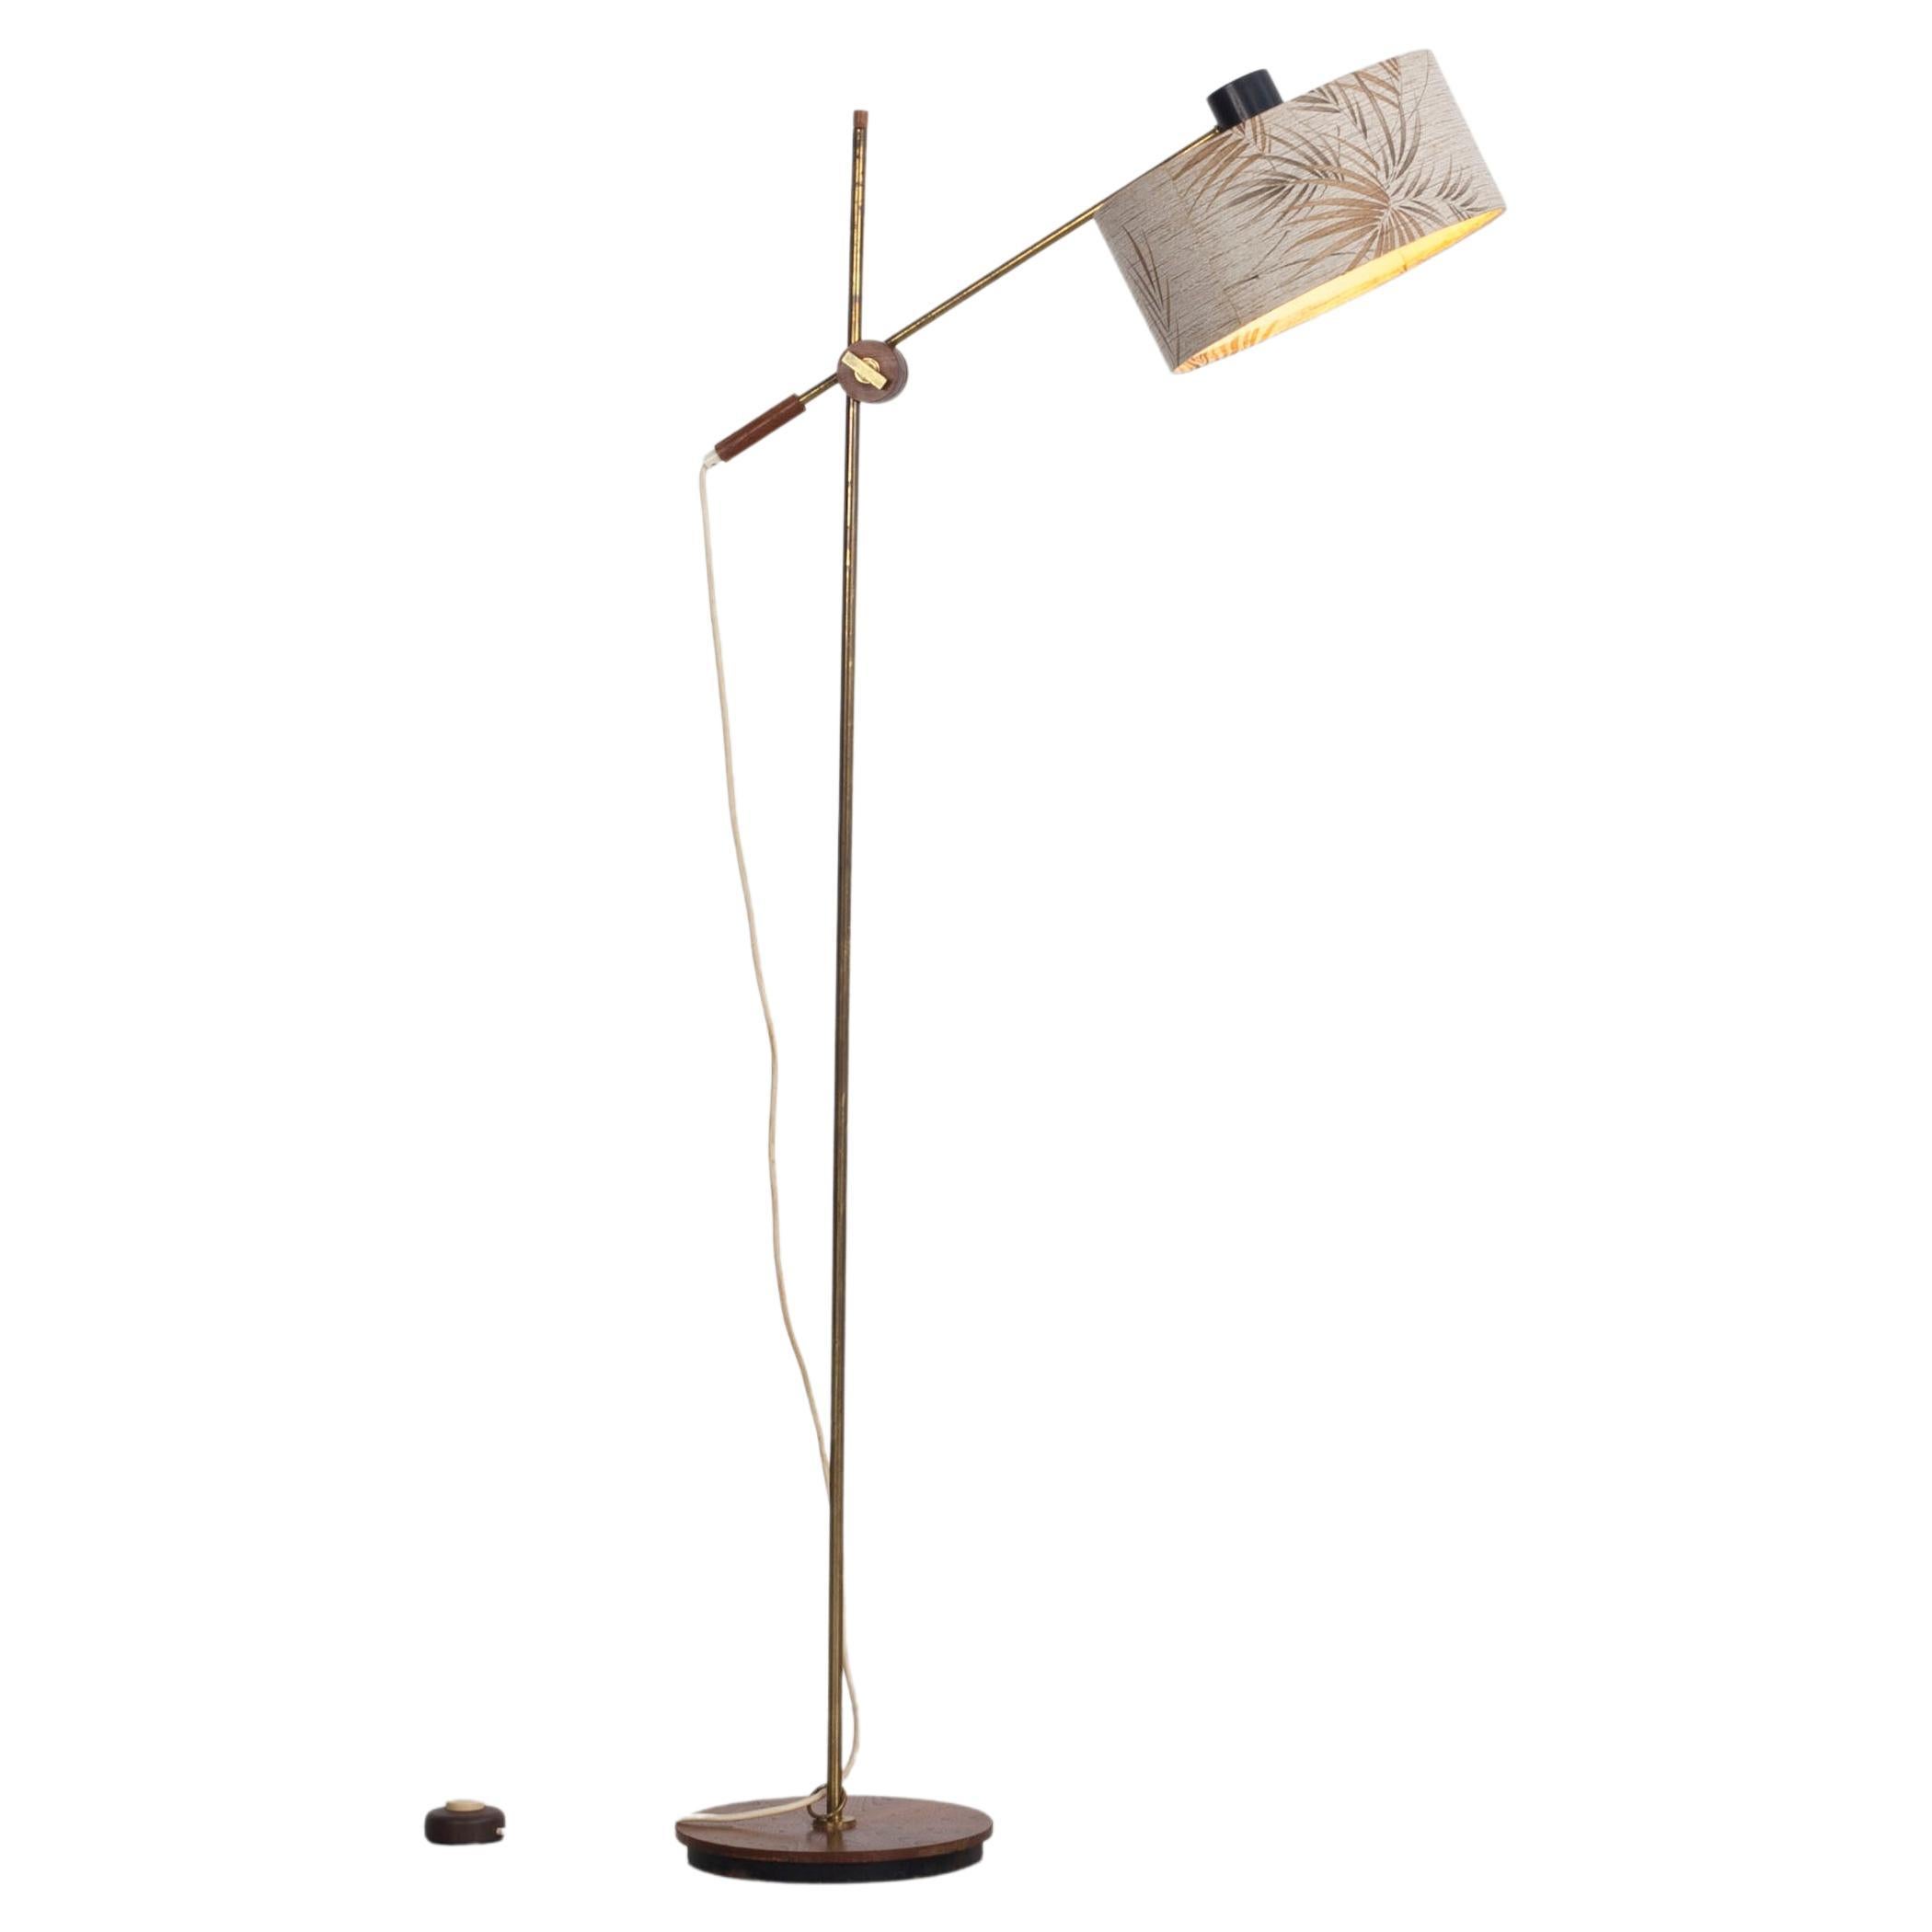 Verstellbare Stehlampe aus den 60er Jahren mit Lampenschirm und verstellbarer Höhe